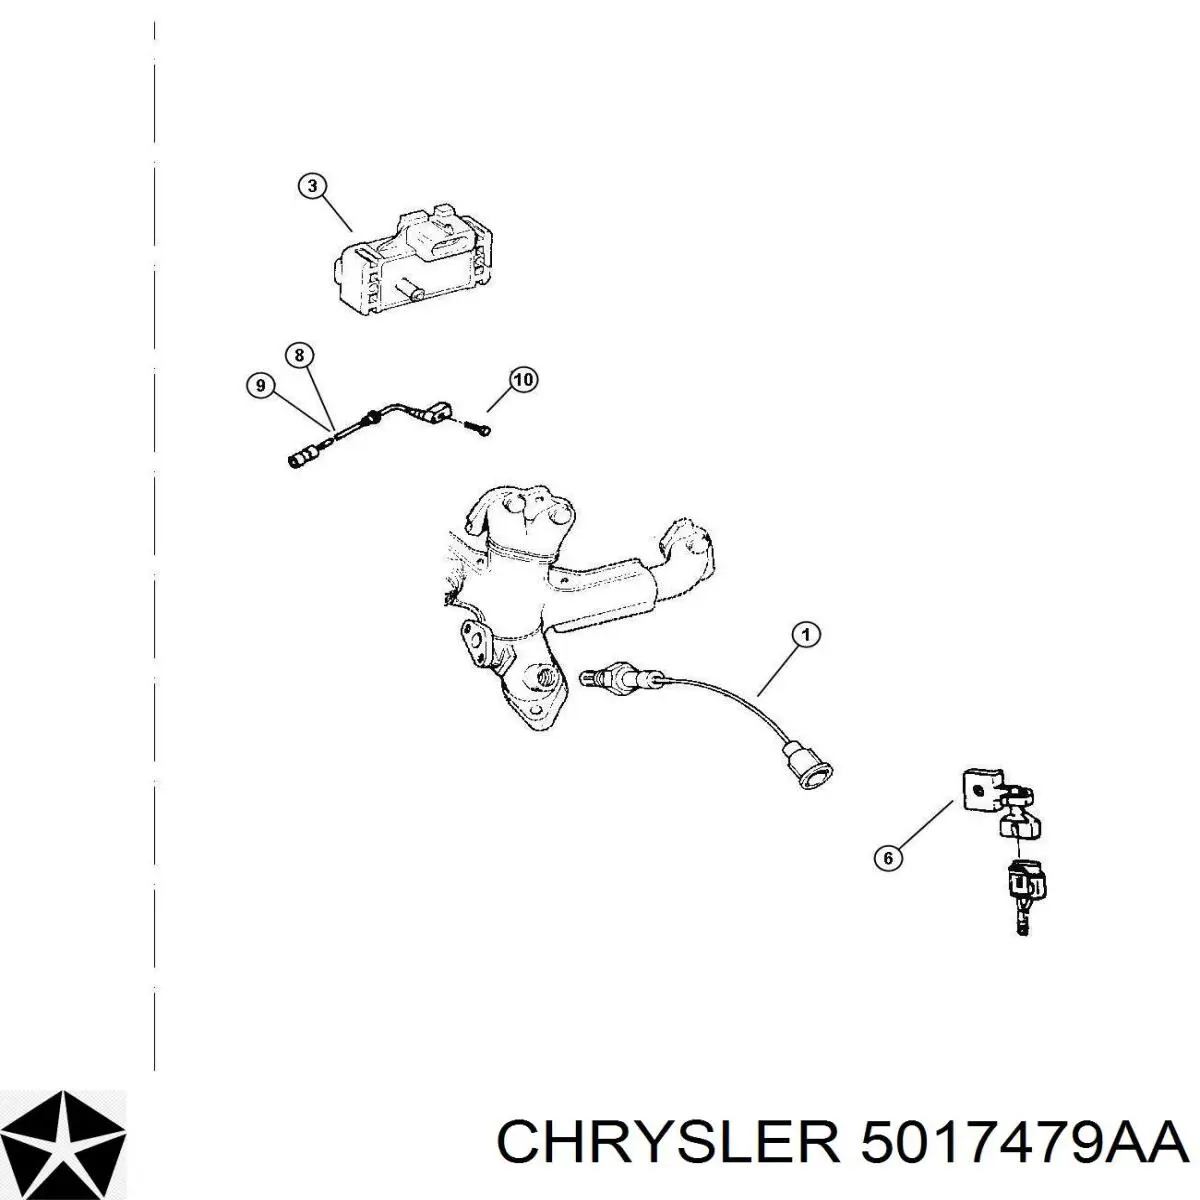 5017479AA Chrysler sensor tps